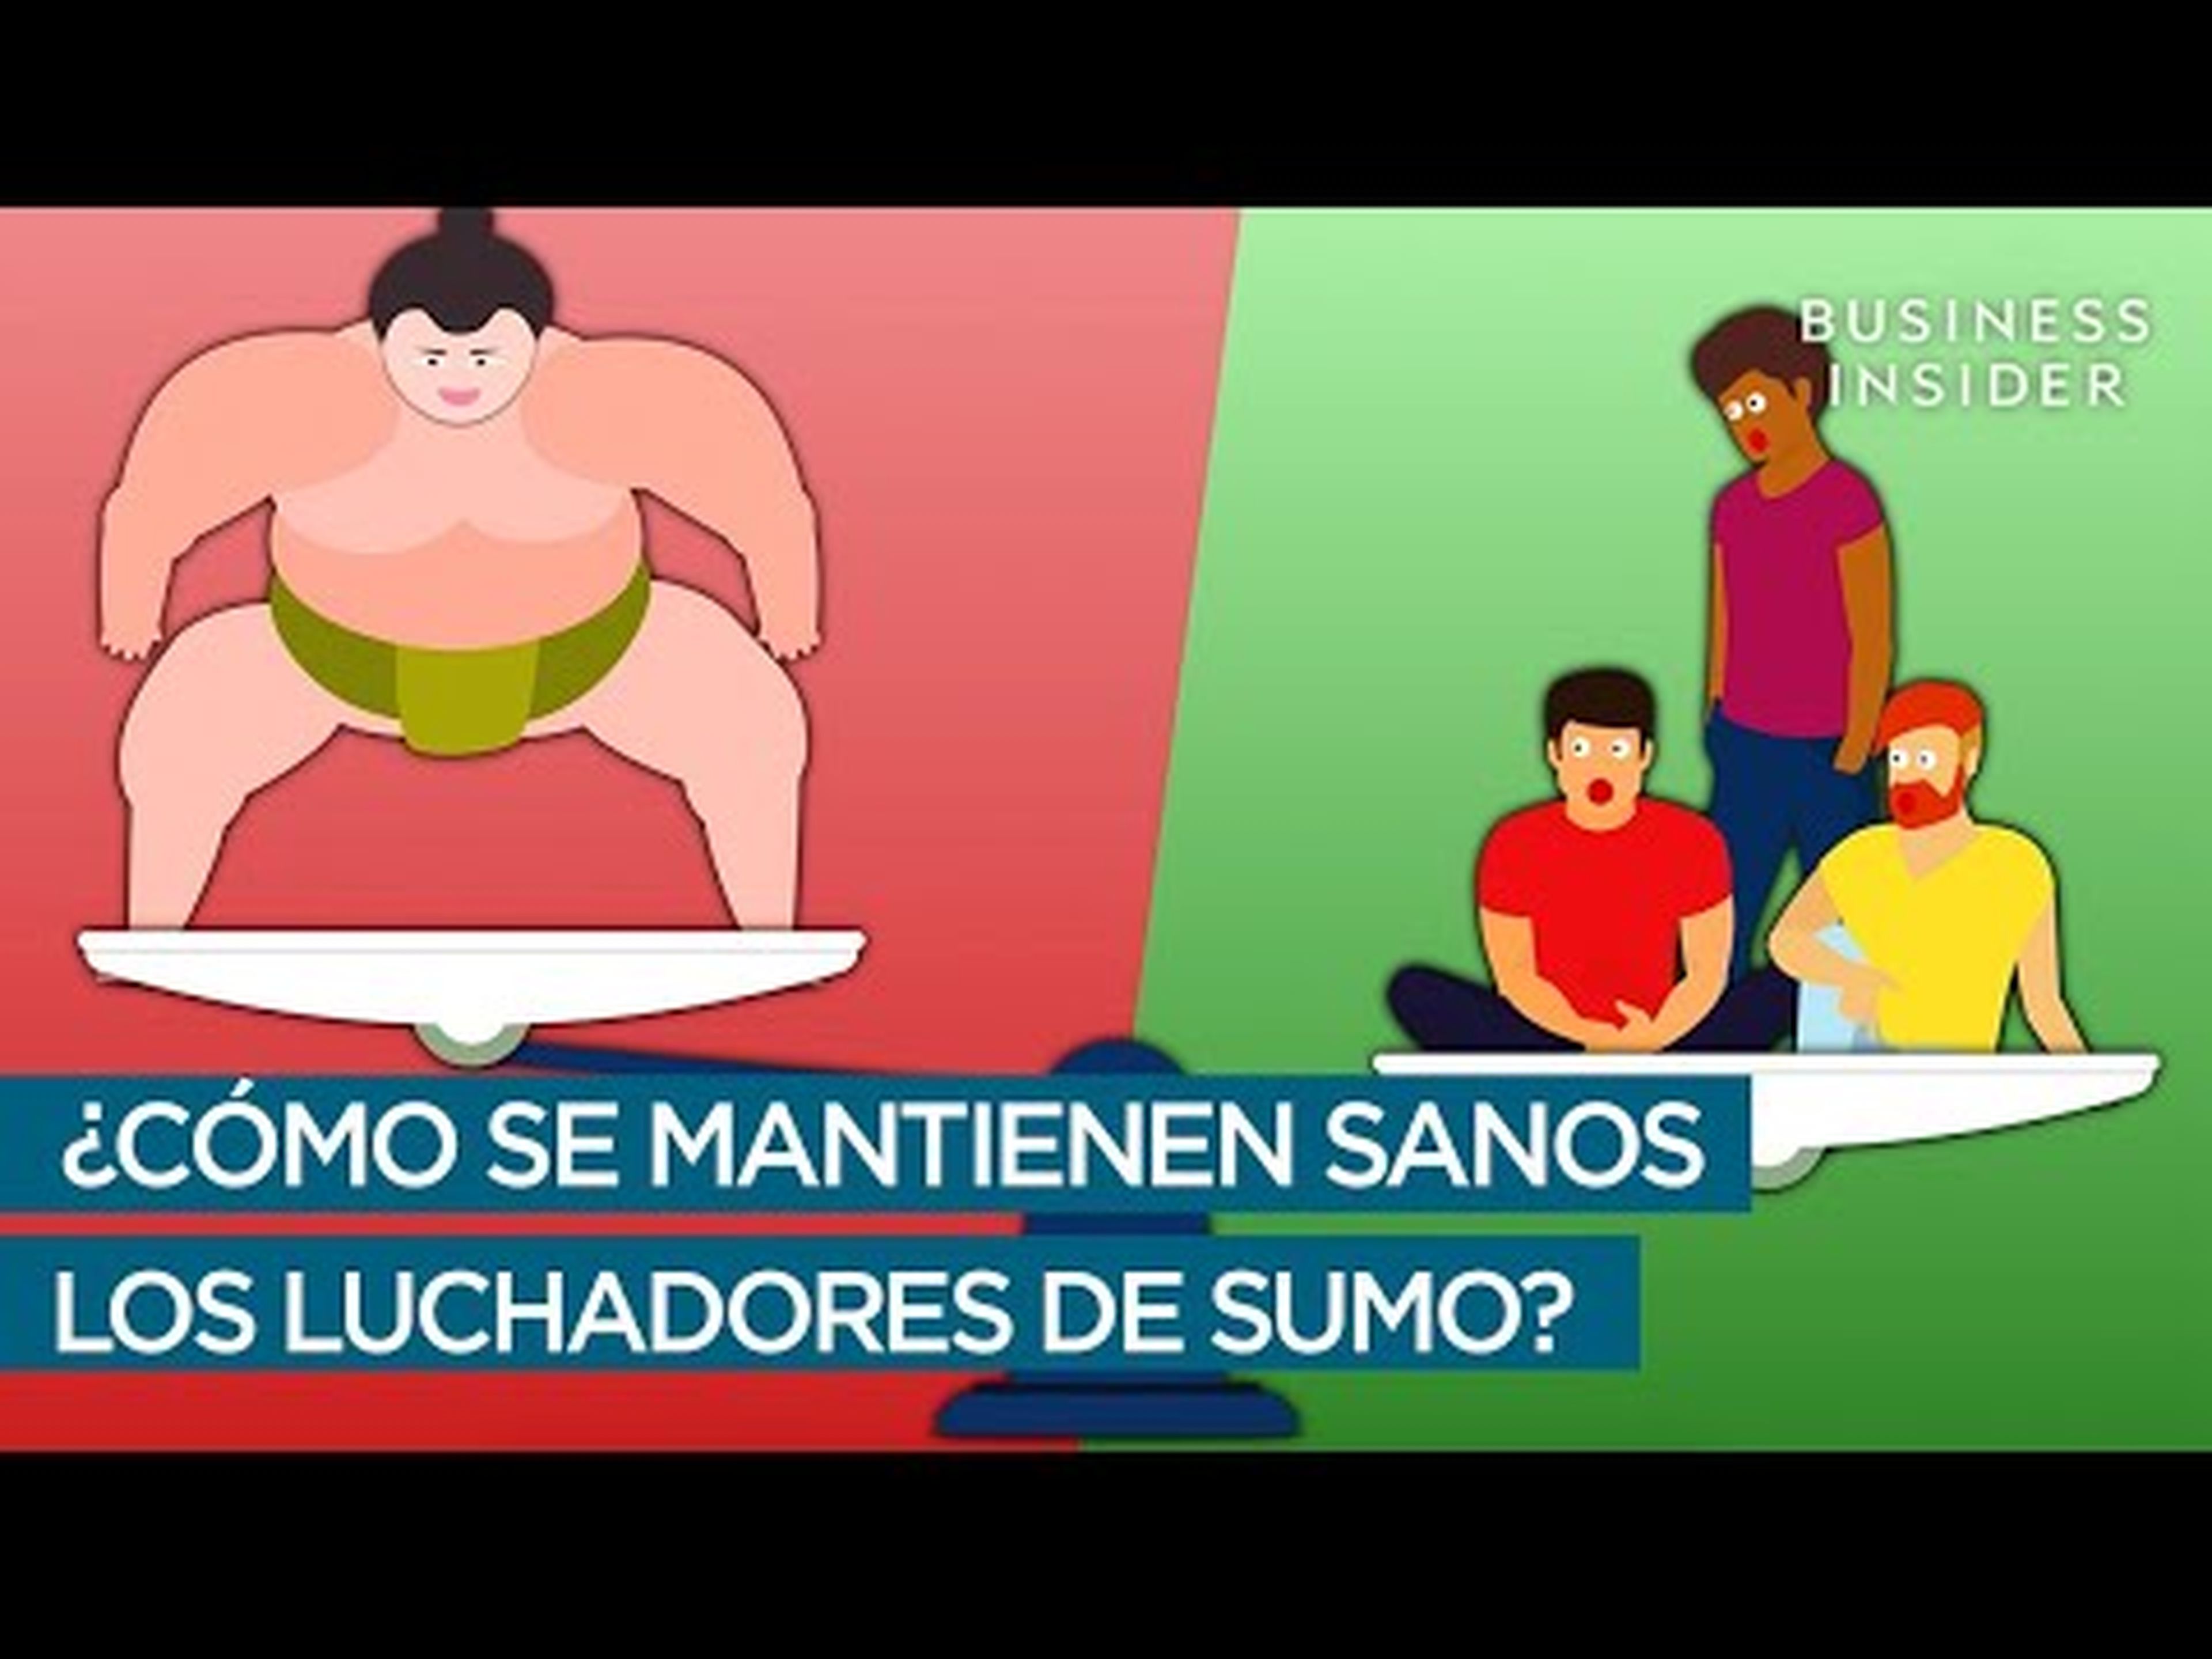 ¿Cómo se mantienen sanos los luchadores de sumo?